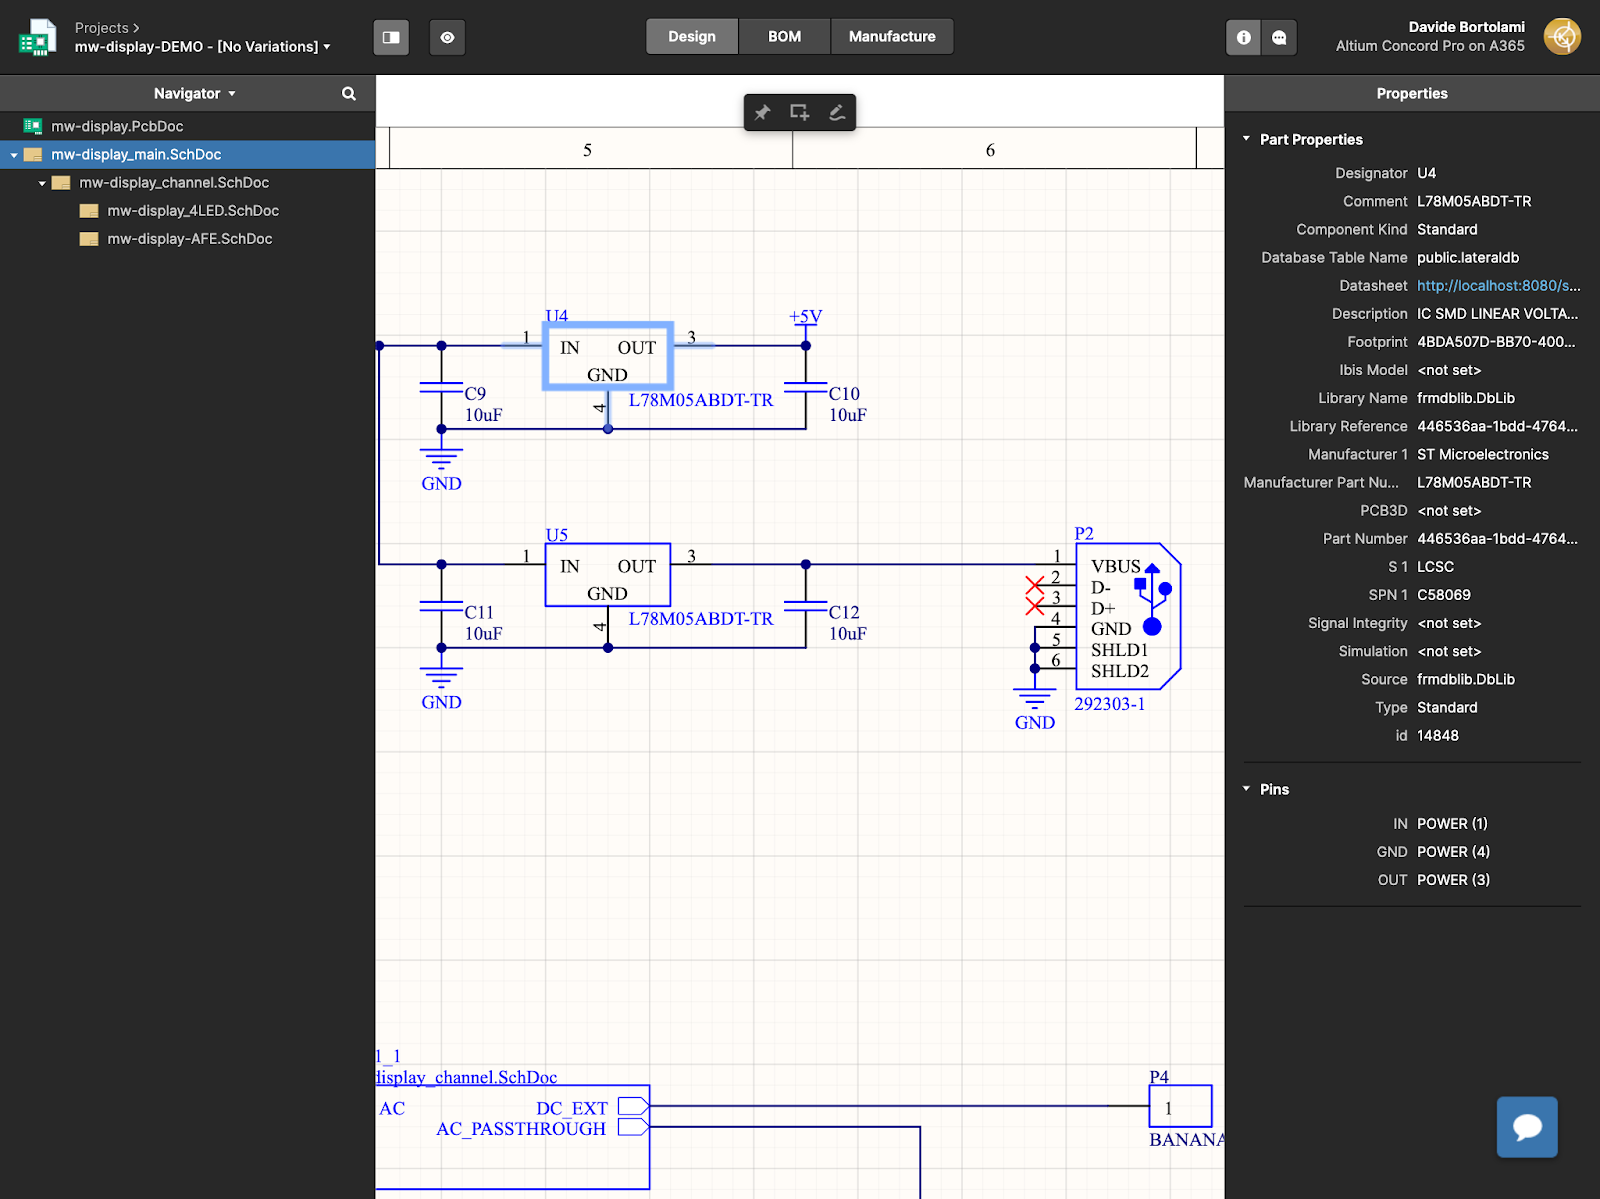 Ventana principal de diseño de Altium 365 vista desde un iPad Pro